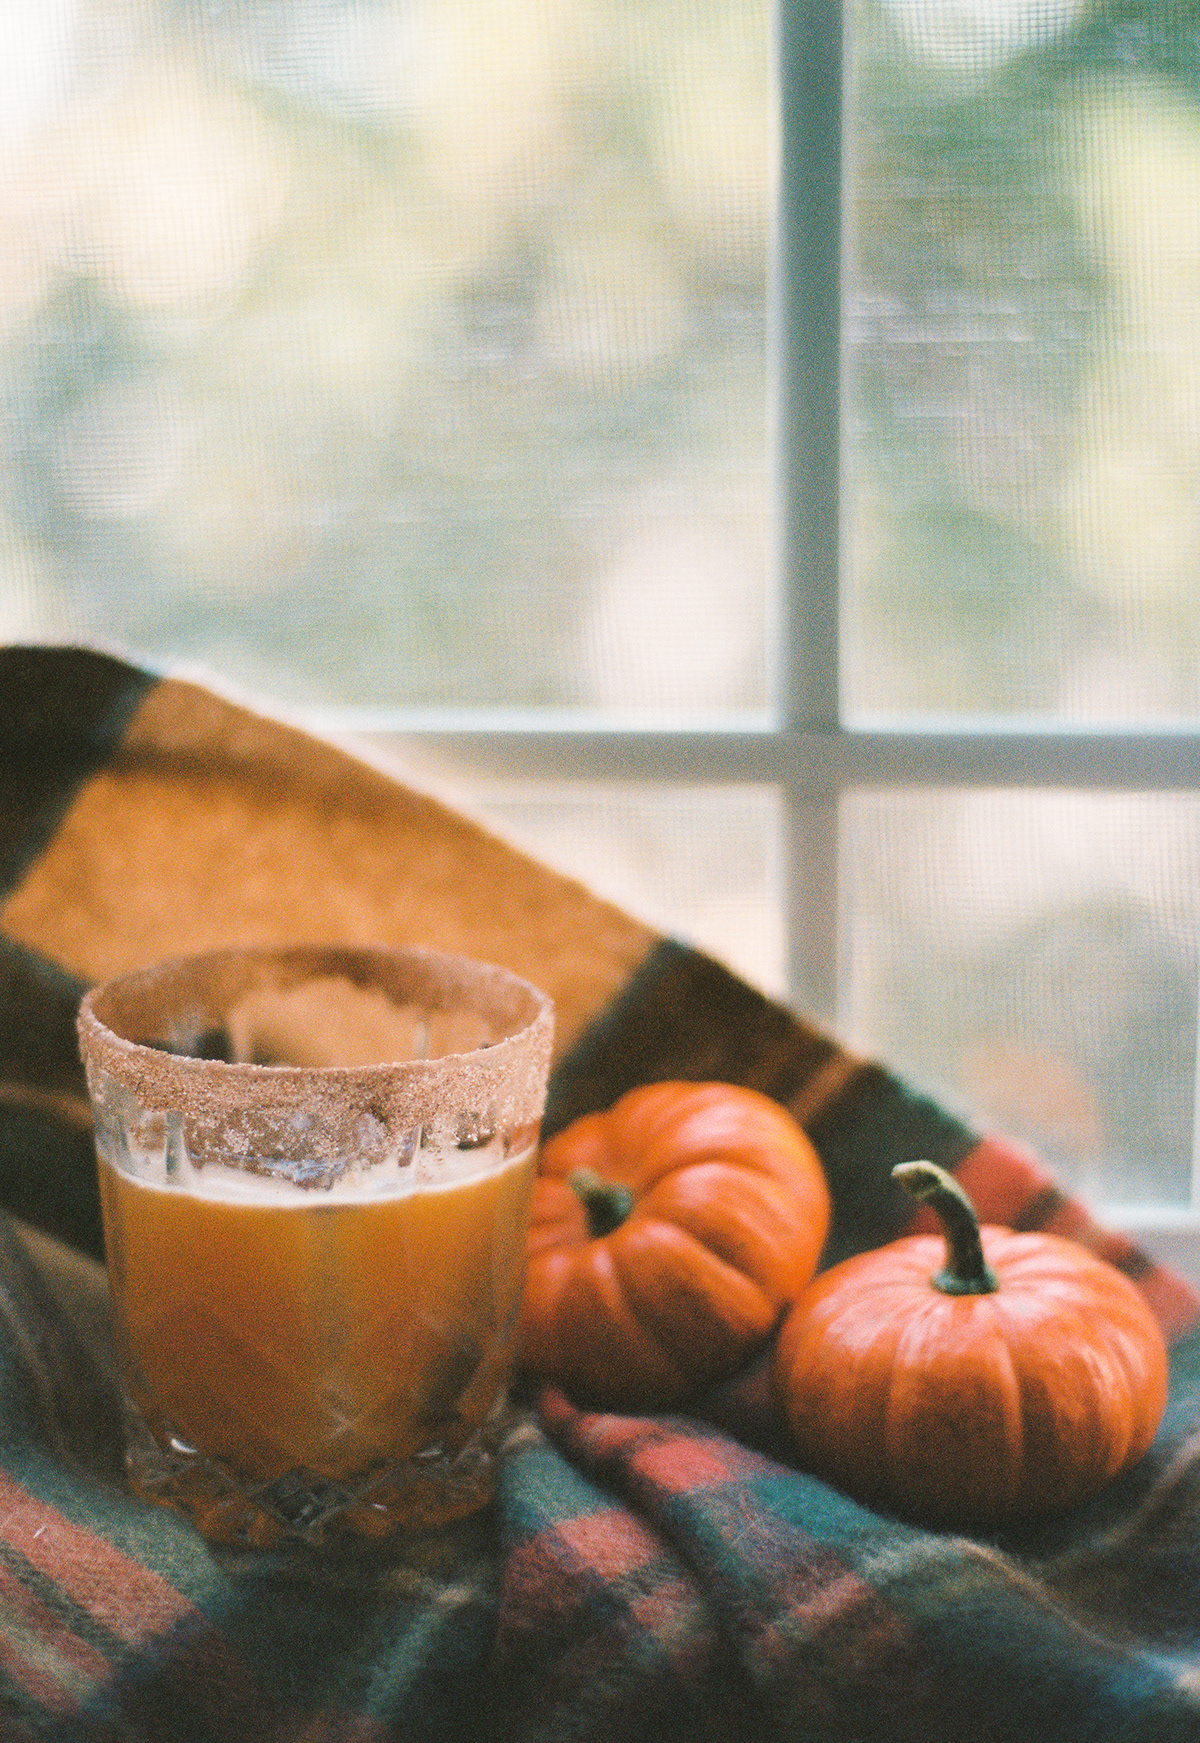 film photography 35mm Film   Photography  35mm film autumn Fall october pumpkin Halloween